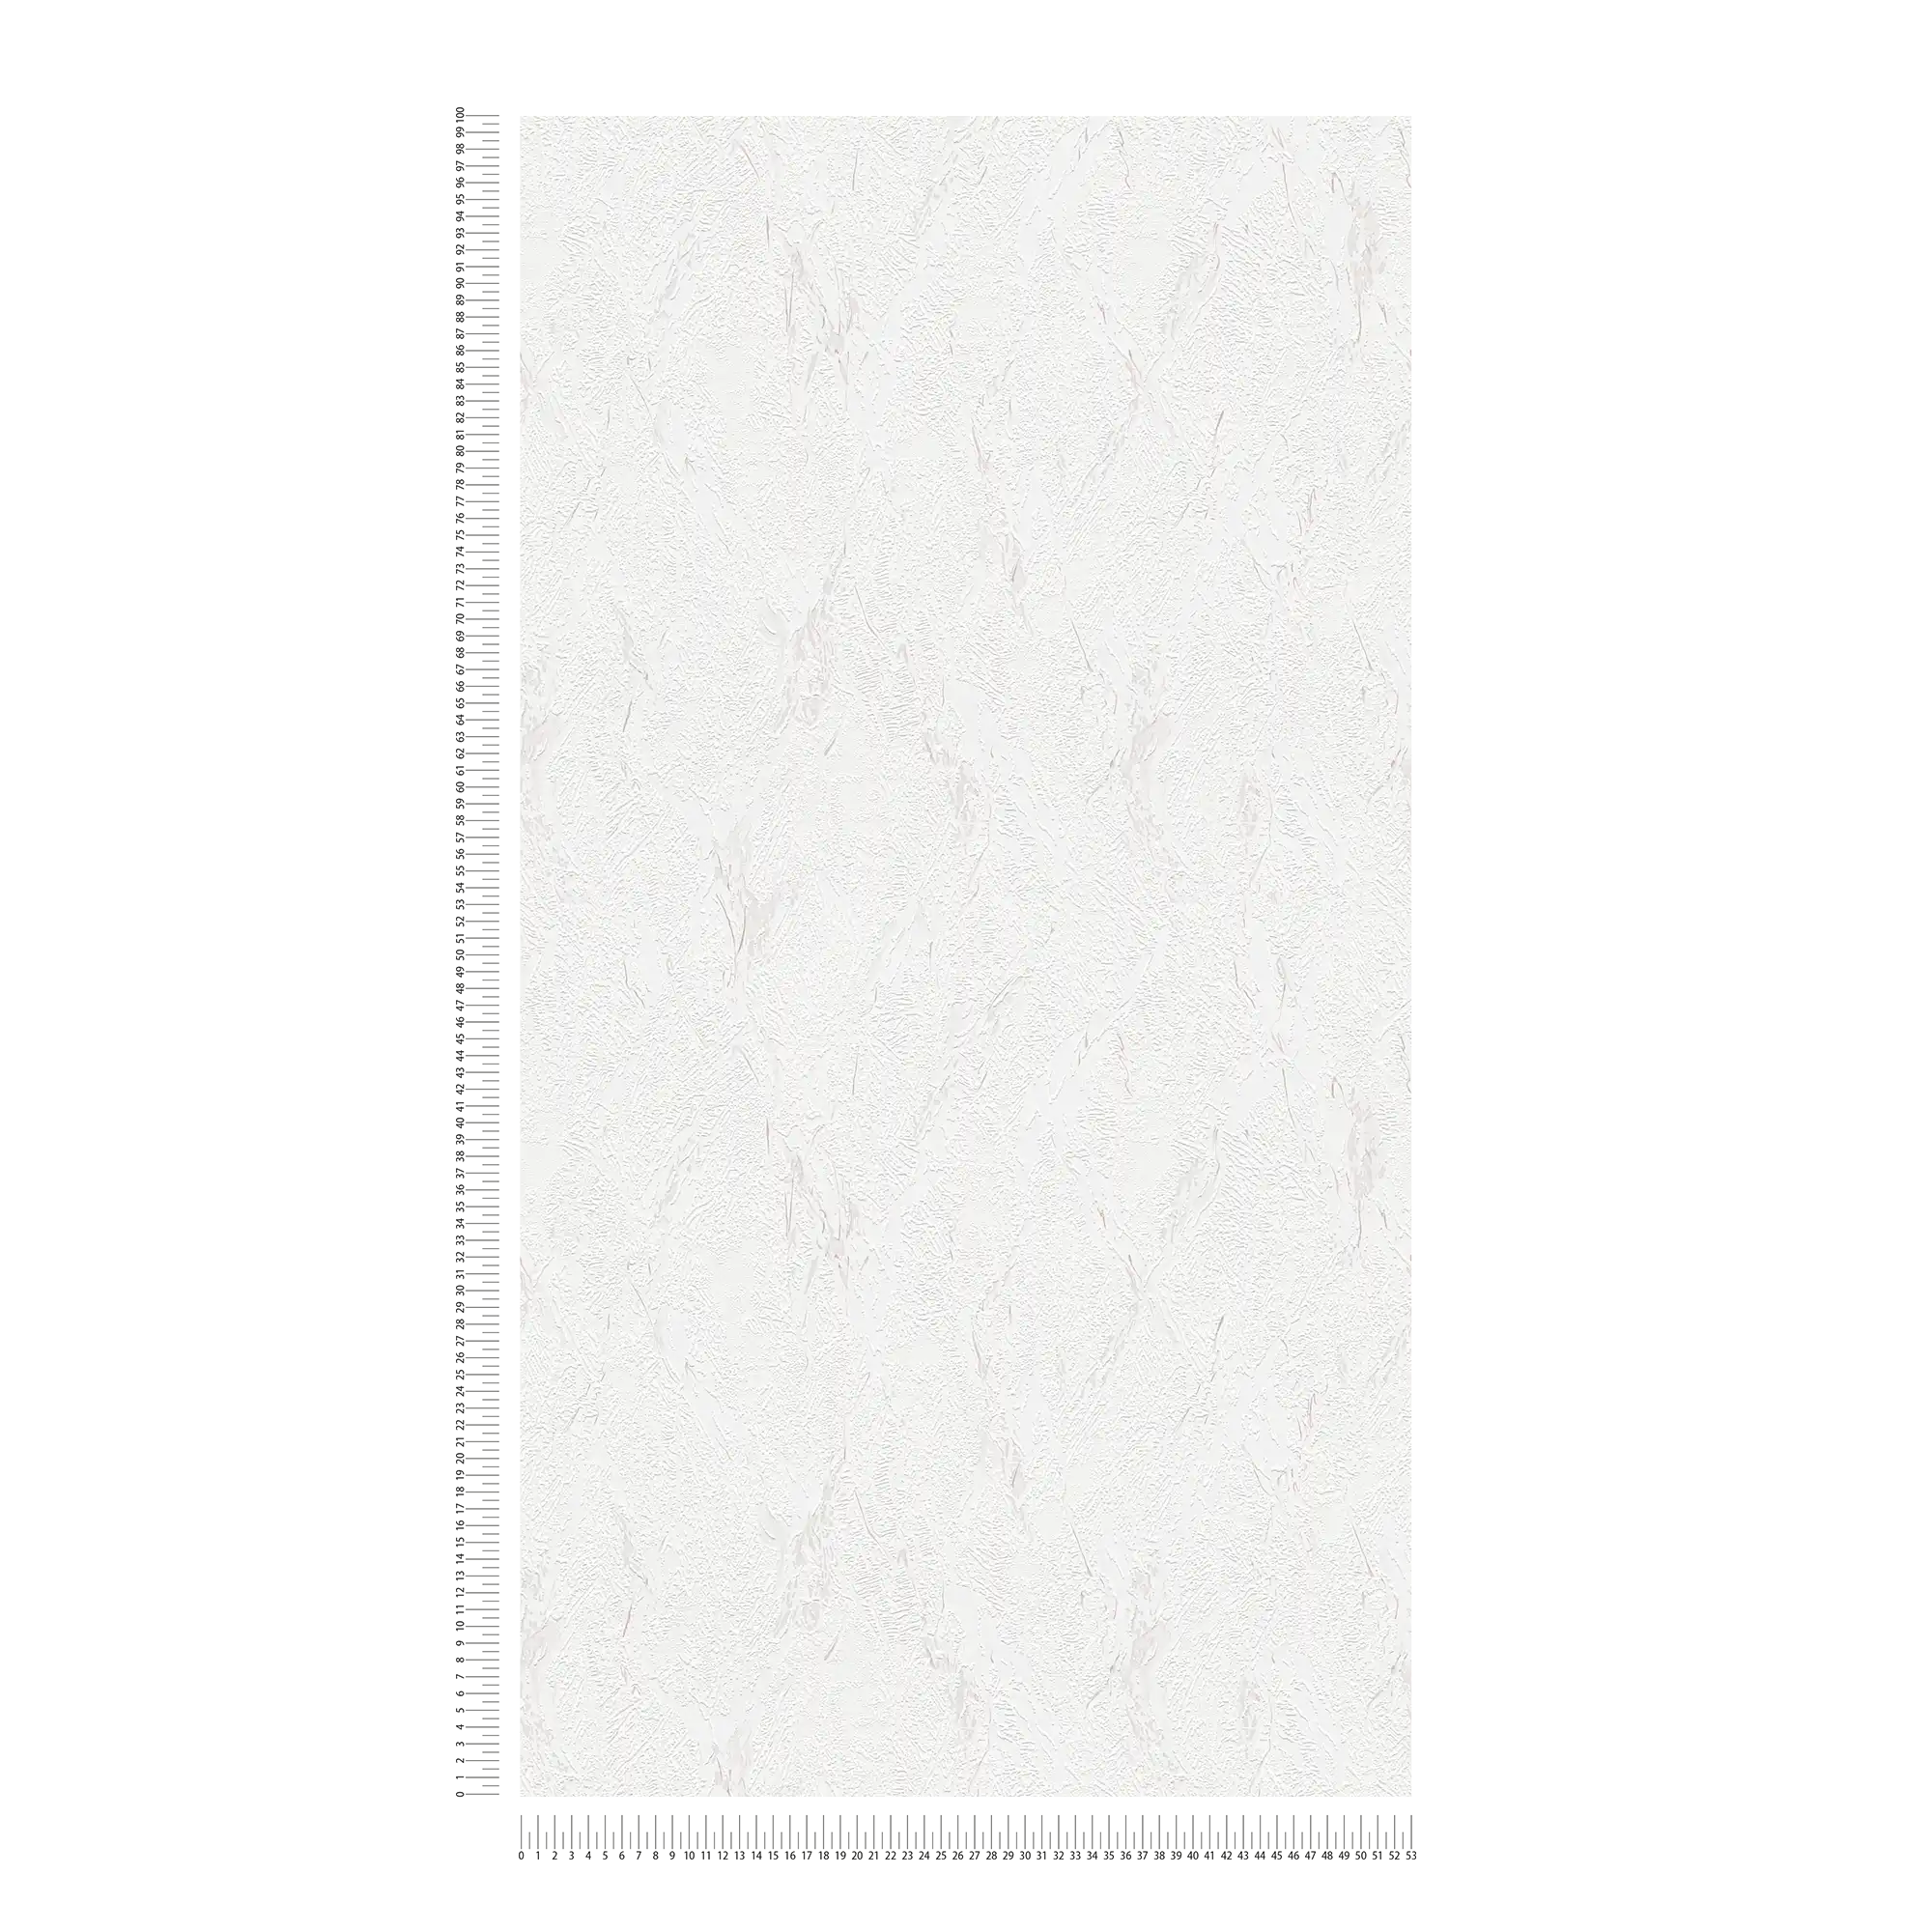             Strukturierte Papiertapete mit Putzoptik – Braun, Weiß
        